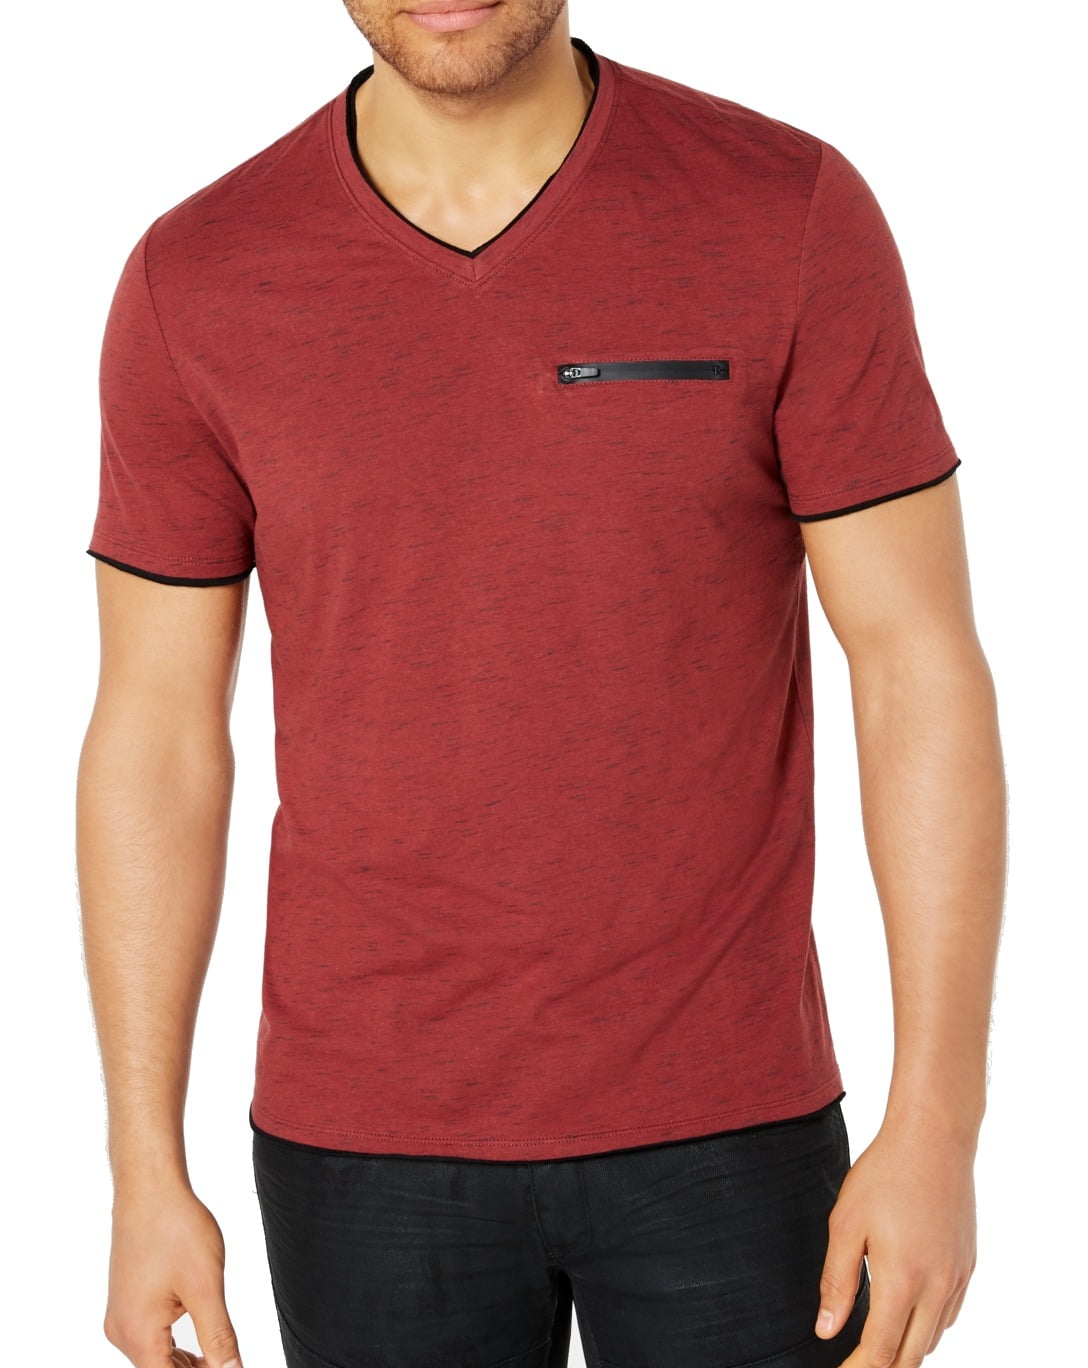 INC International Concepts - Mens T-Shirt Big & Tall Zip-Pocket Short ...